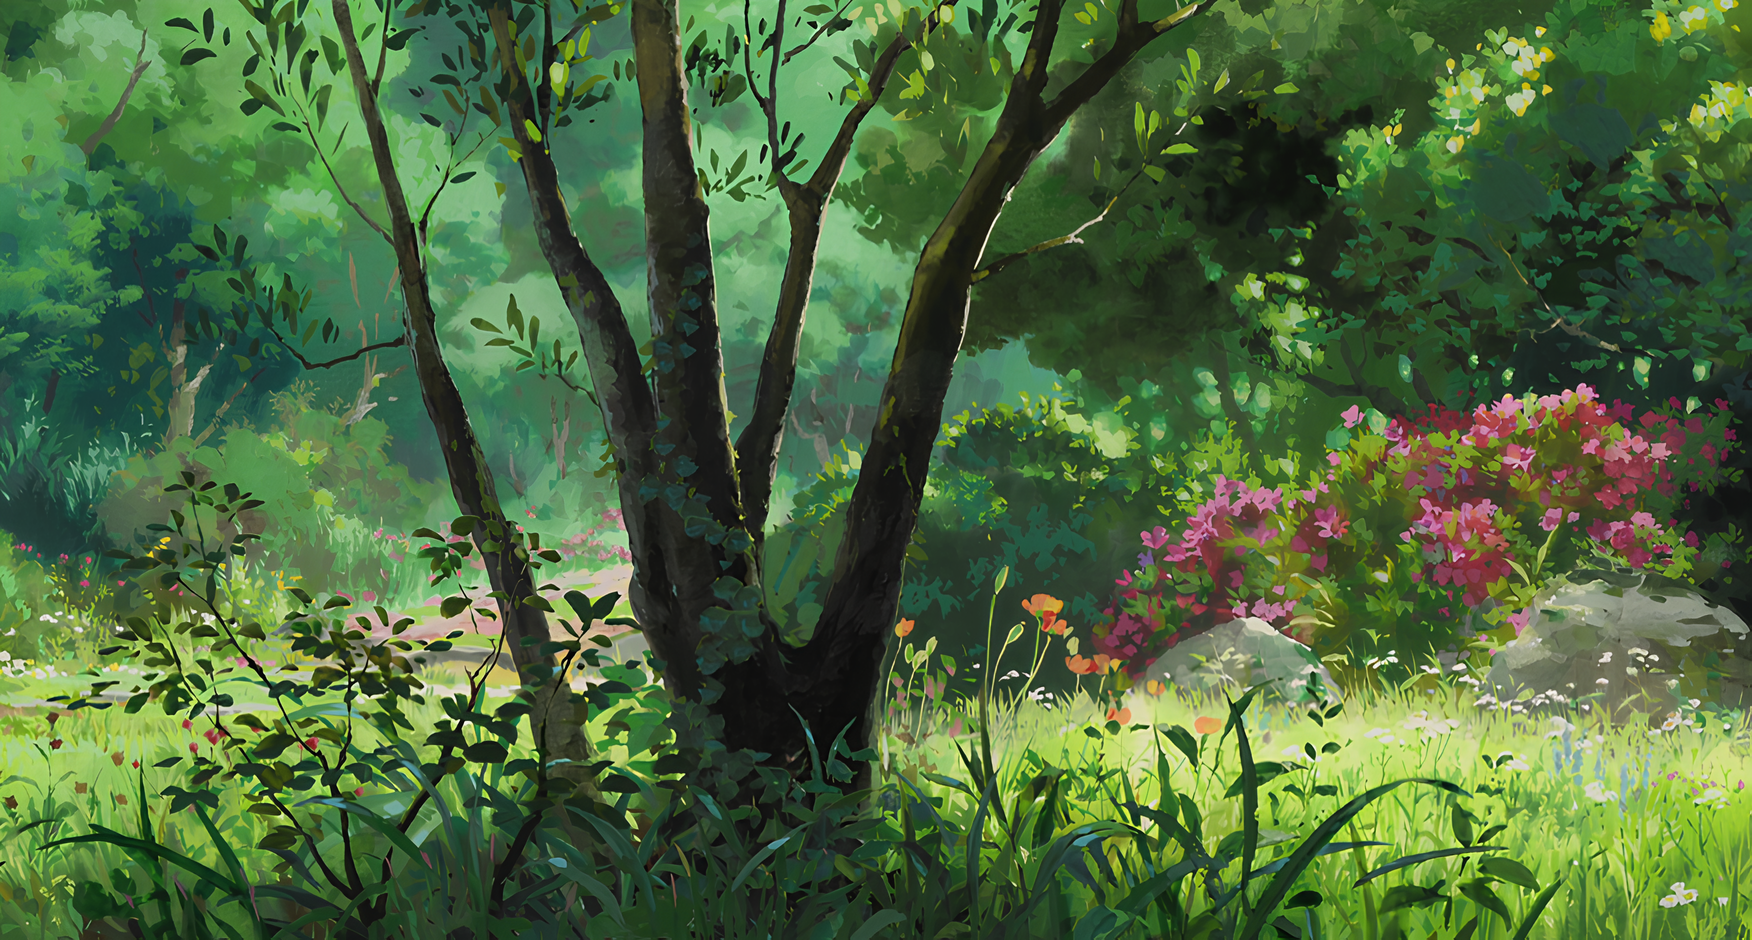 Latest Studio Ghibli Illustration